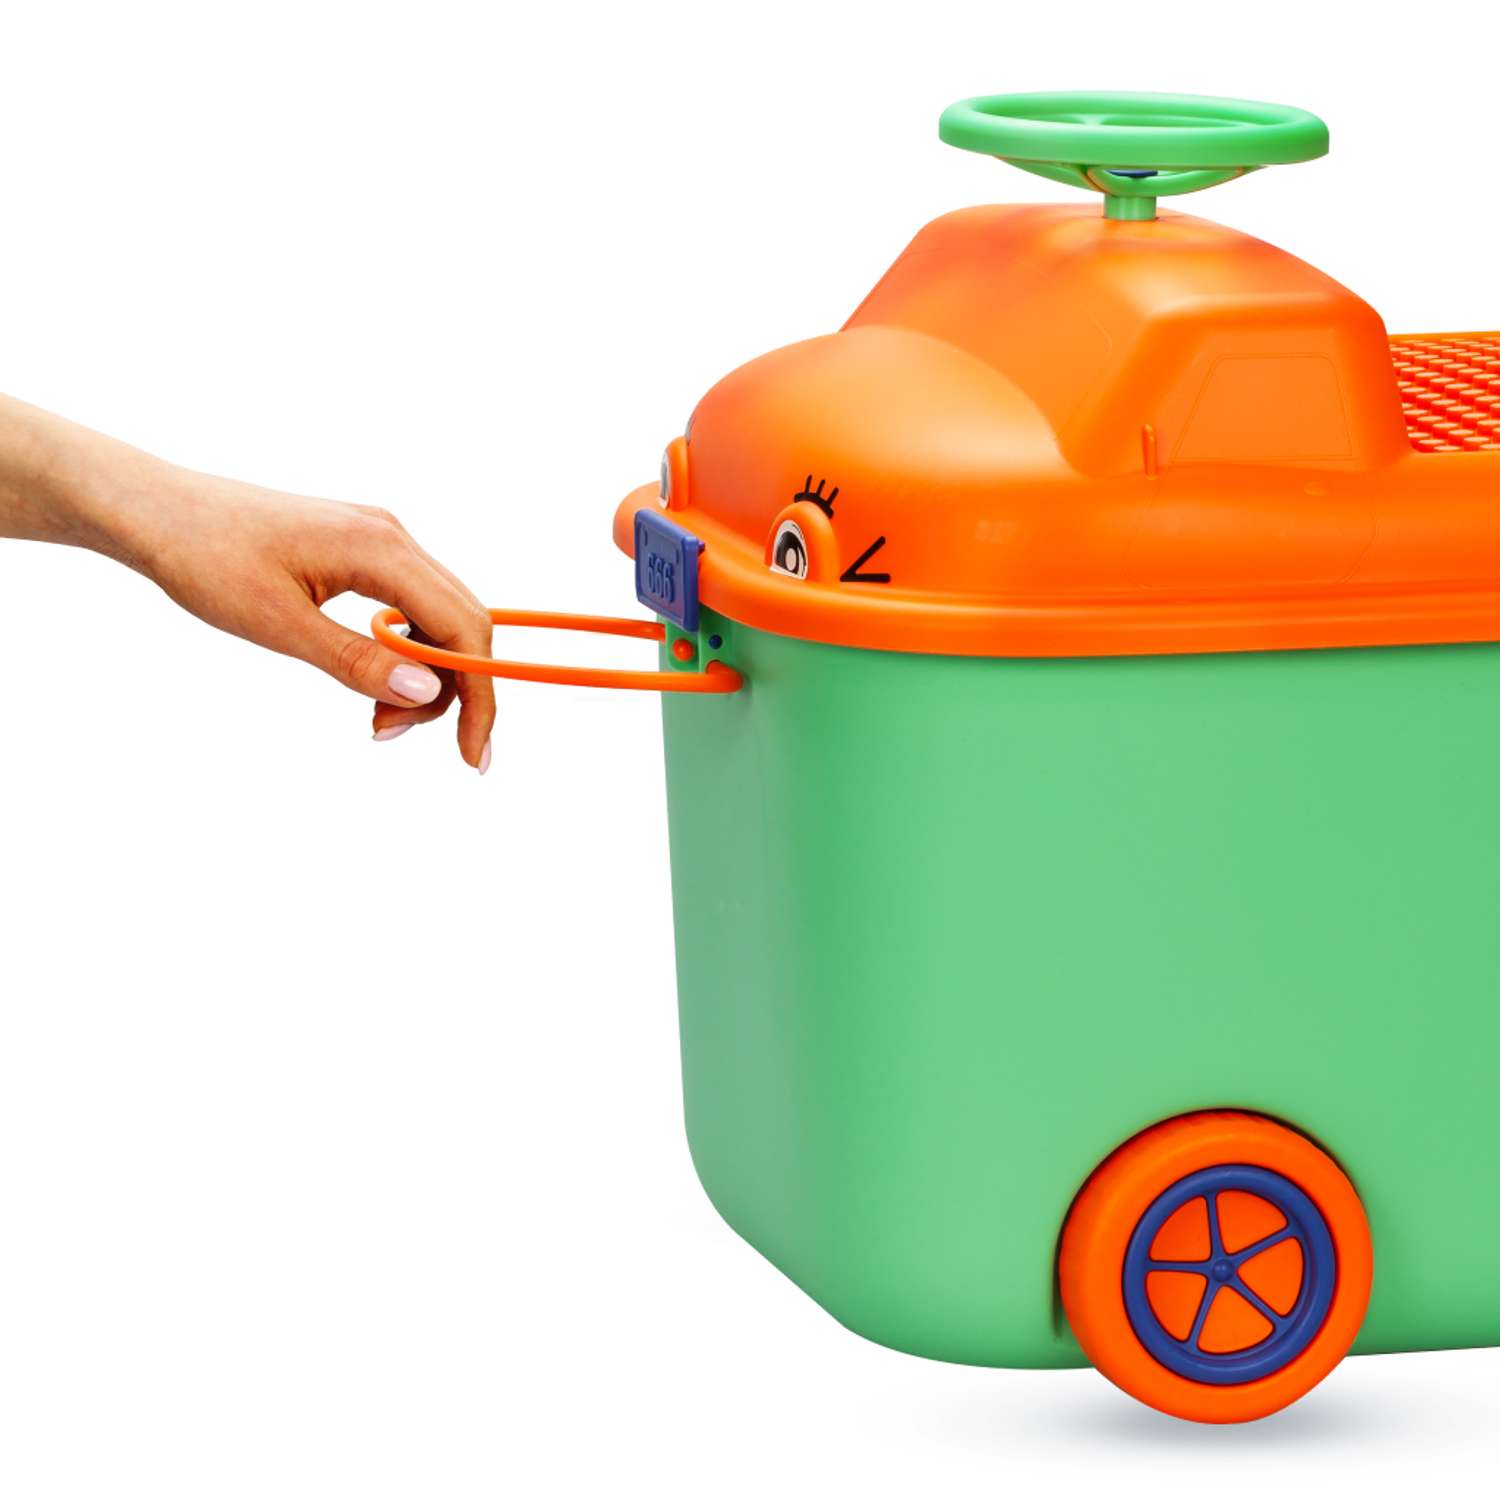 Ящик для хранения игрушек Solmax контейнер на колесиках 54х41.5х38 см зеленый - фото 5